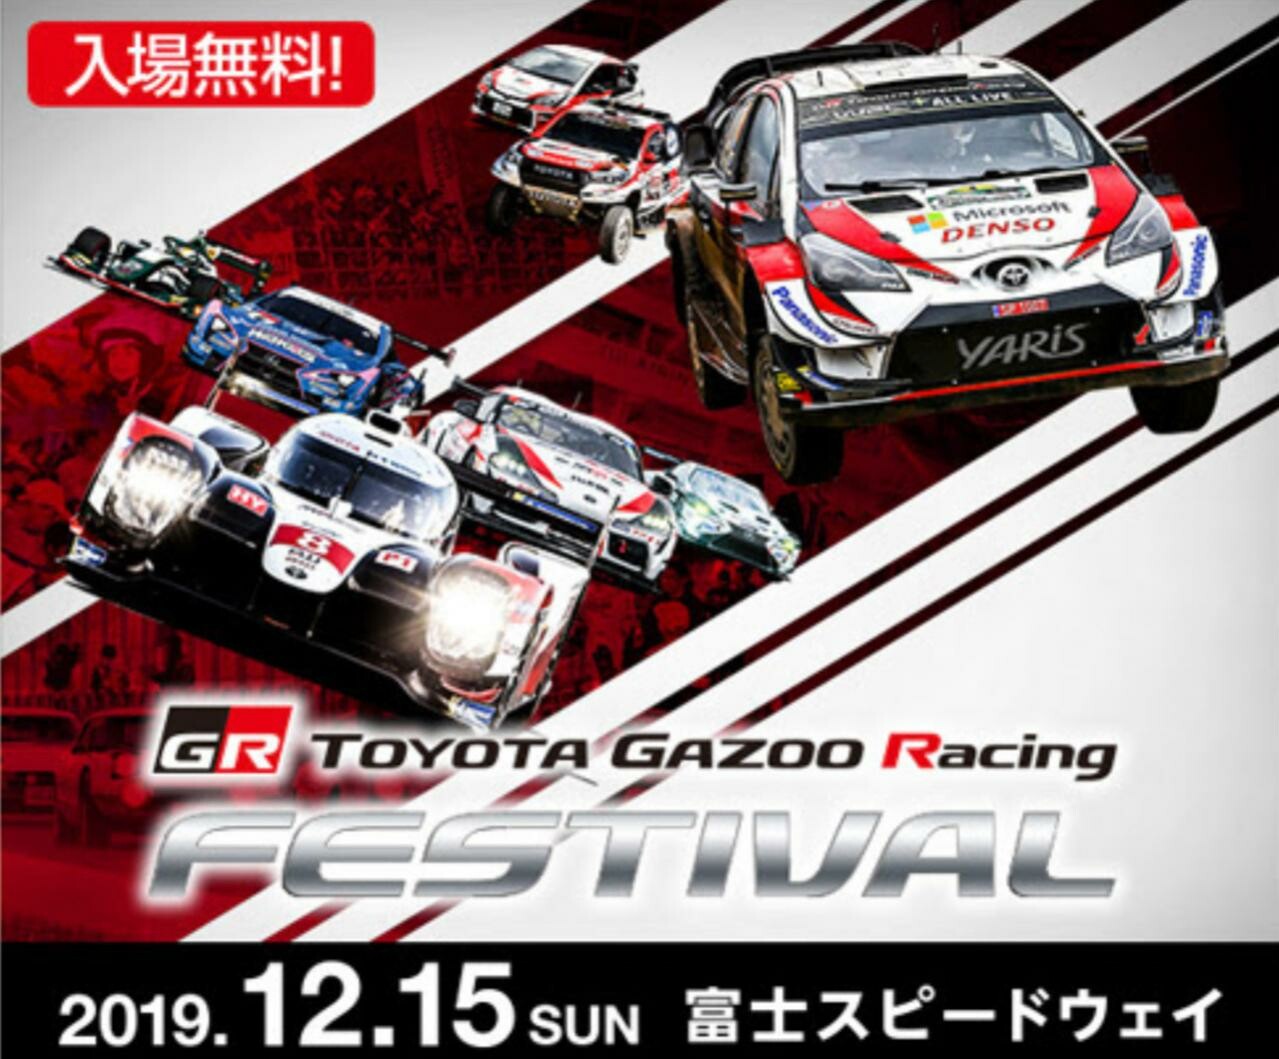 「TOYOTA GAZOO Racing FESTIVAL 2019」が12月15日に富士スピードウェイで開催！ モータースポーツで活躍したマシンが集結